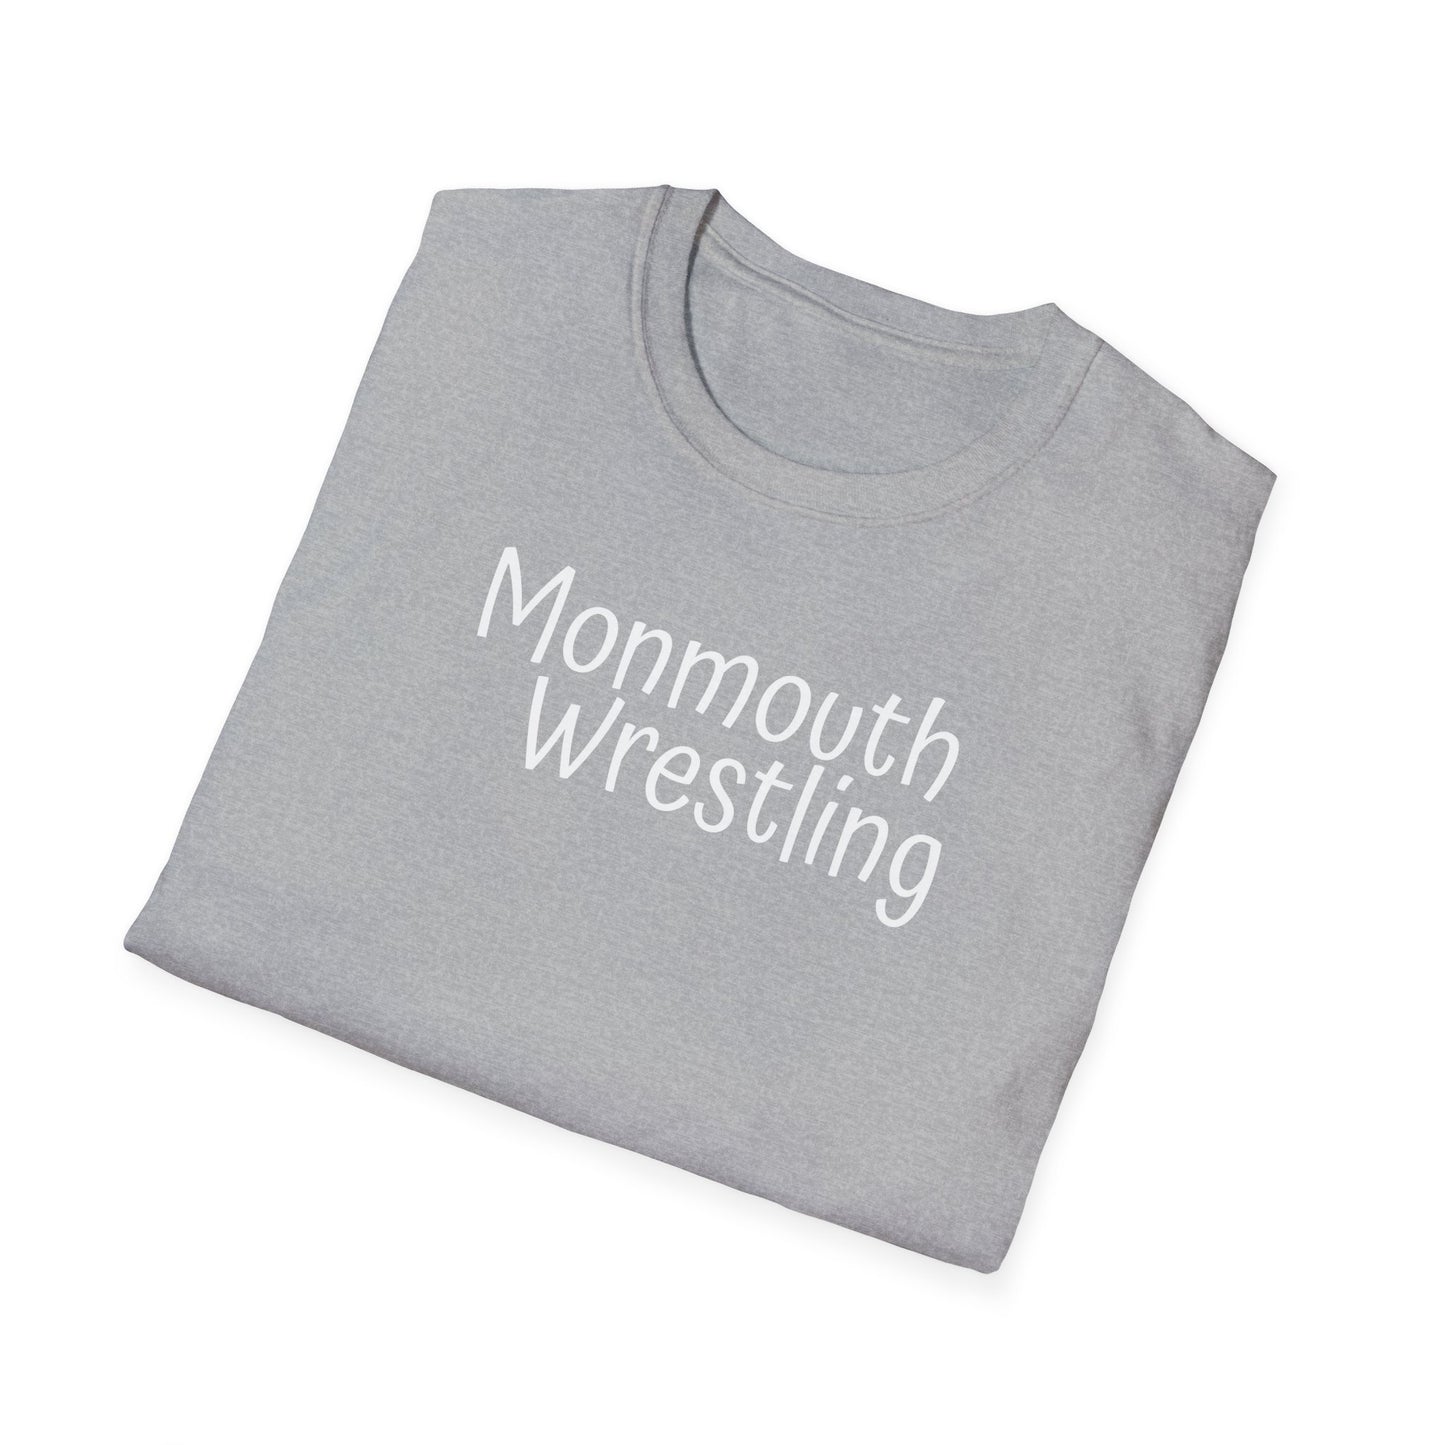 Monmouth Wrestling Unisex Softstyle T-Shirt